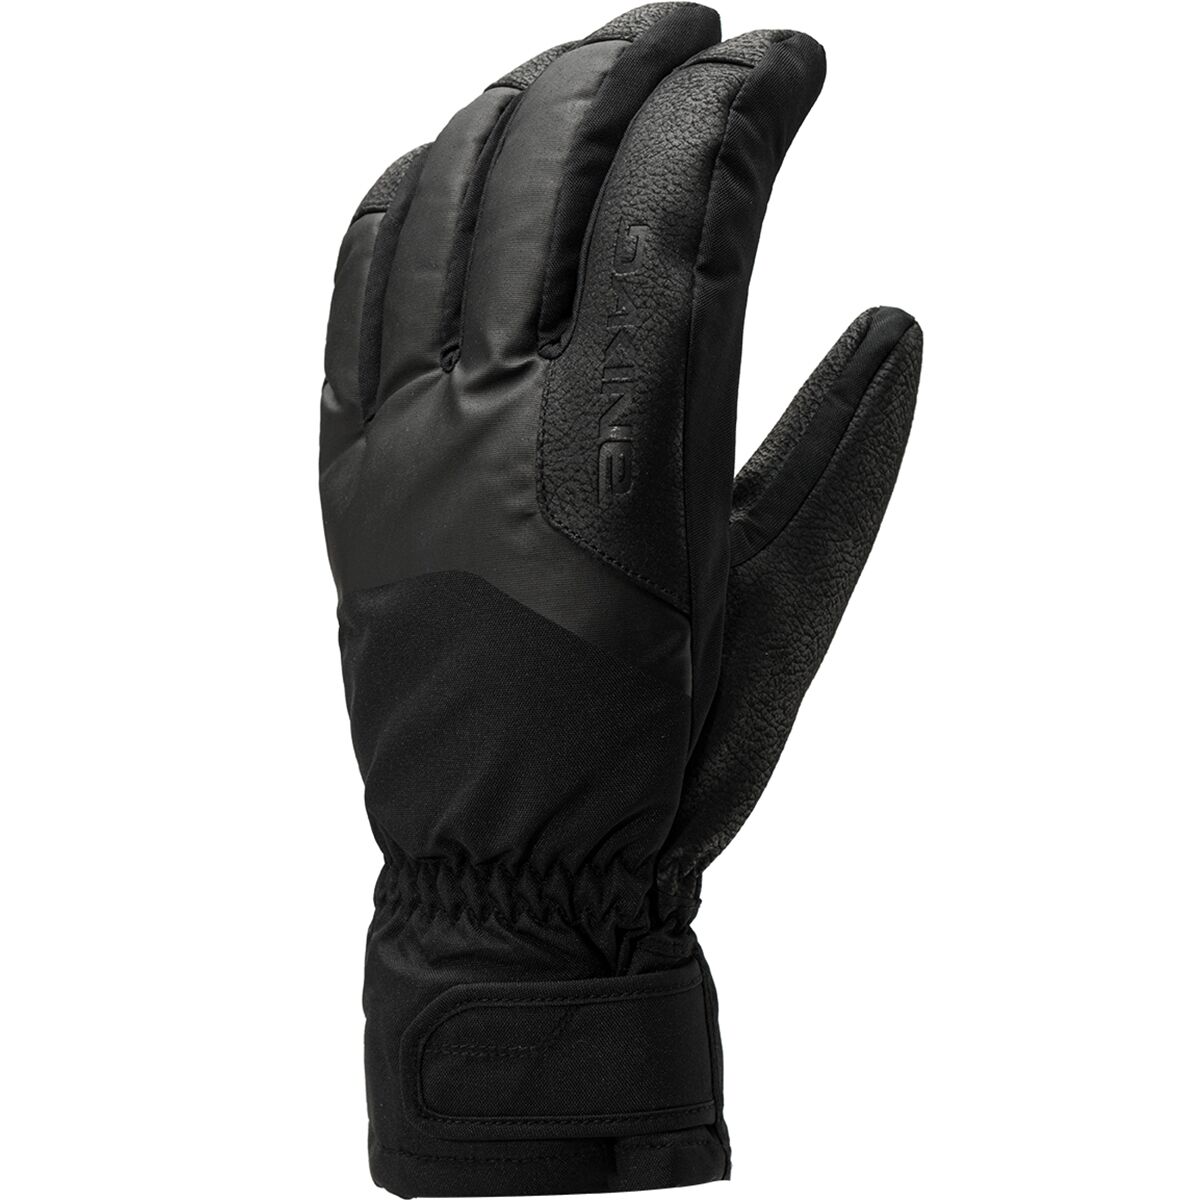 DAKINE Nova Short Glove - Men's